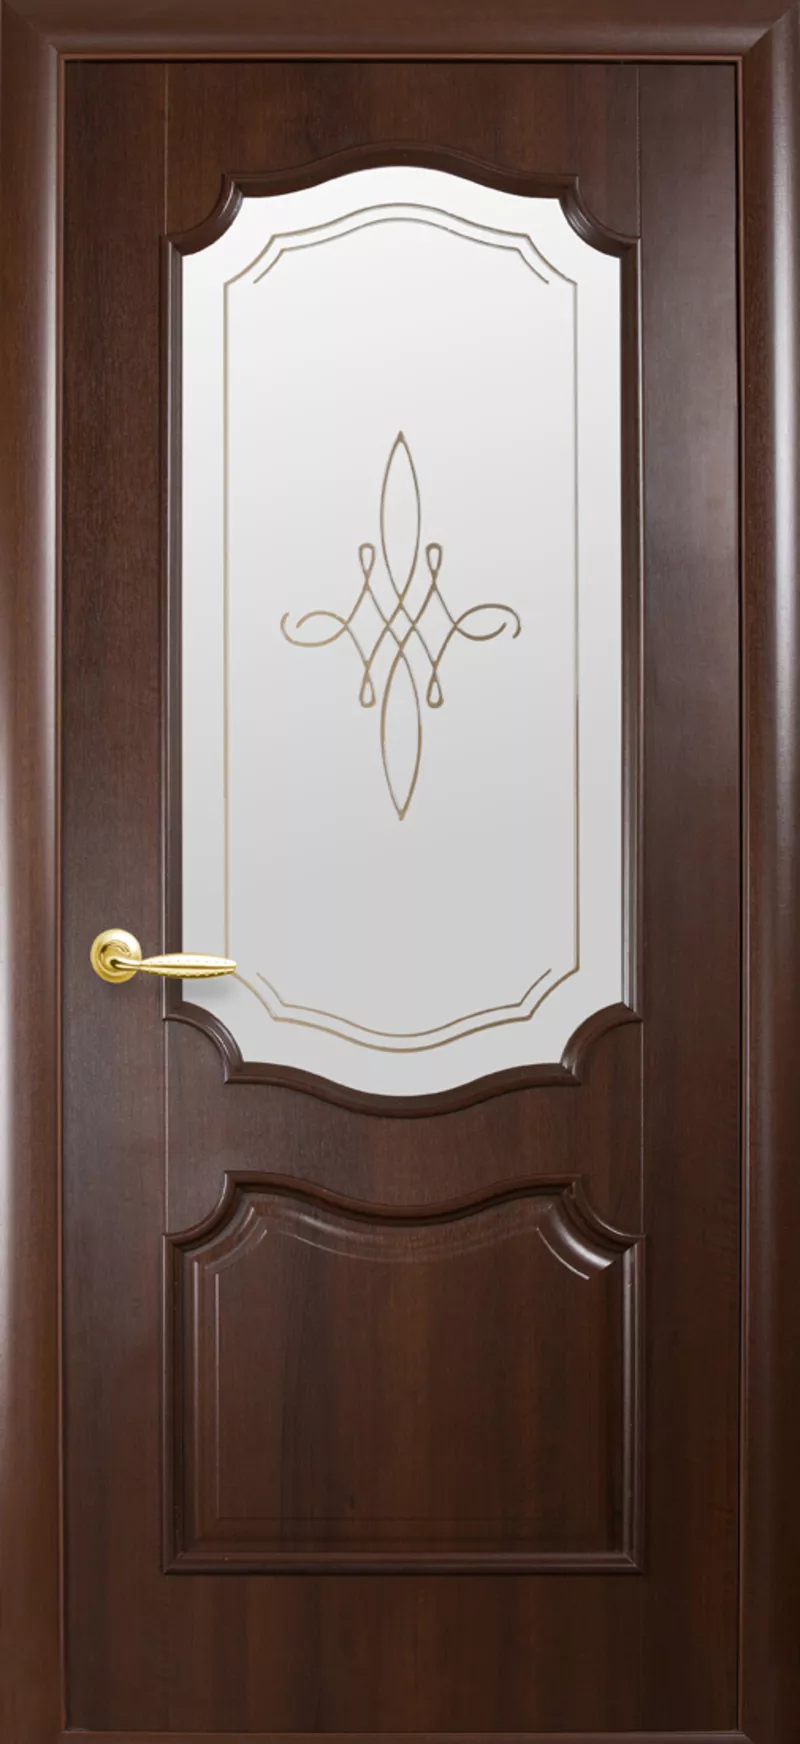 В РАССРОЧКУ И В КРЕДИТ! Межкомнатные двери для любого вида помещения в Алматы купить недорого. 3